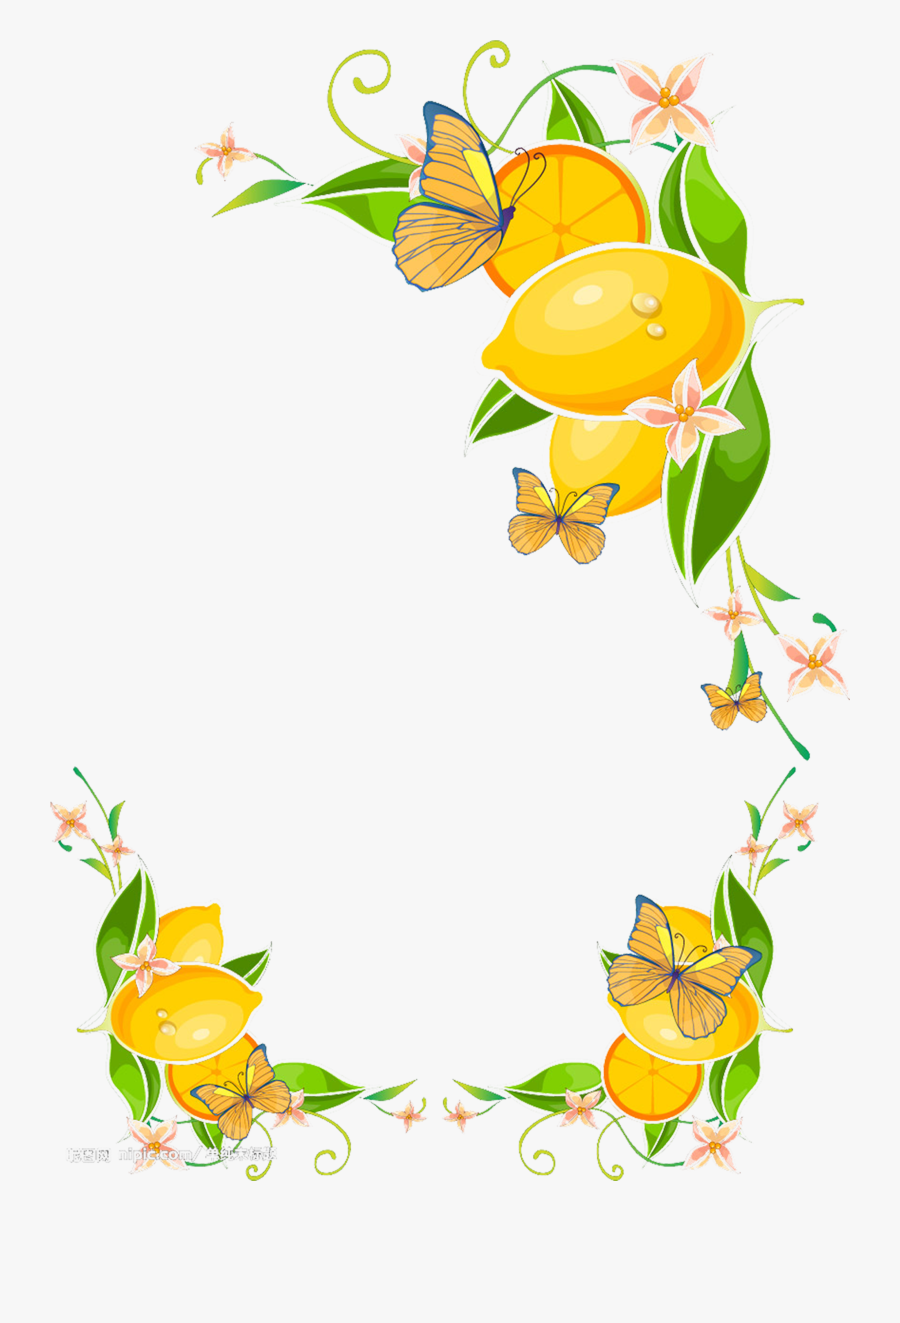 Juice Lemon Clip Art - Mango Fruit Border Designs, Transparent Clipart